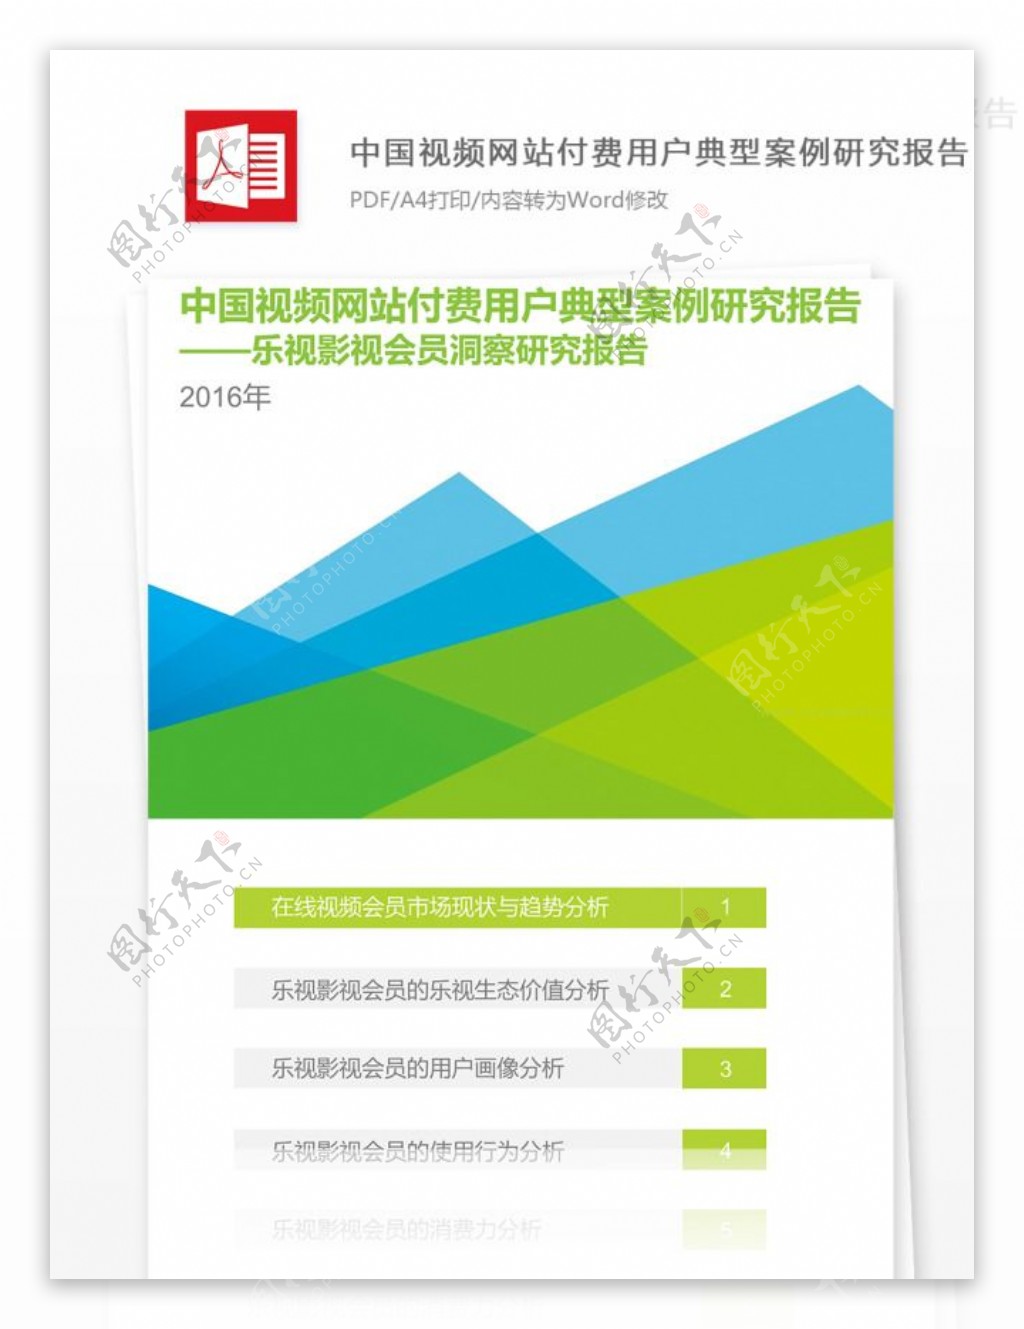 2016年中国视频网站付费用户研究报告